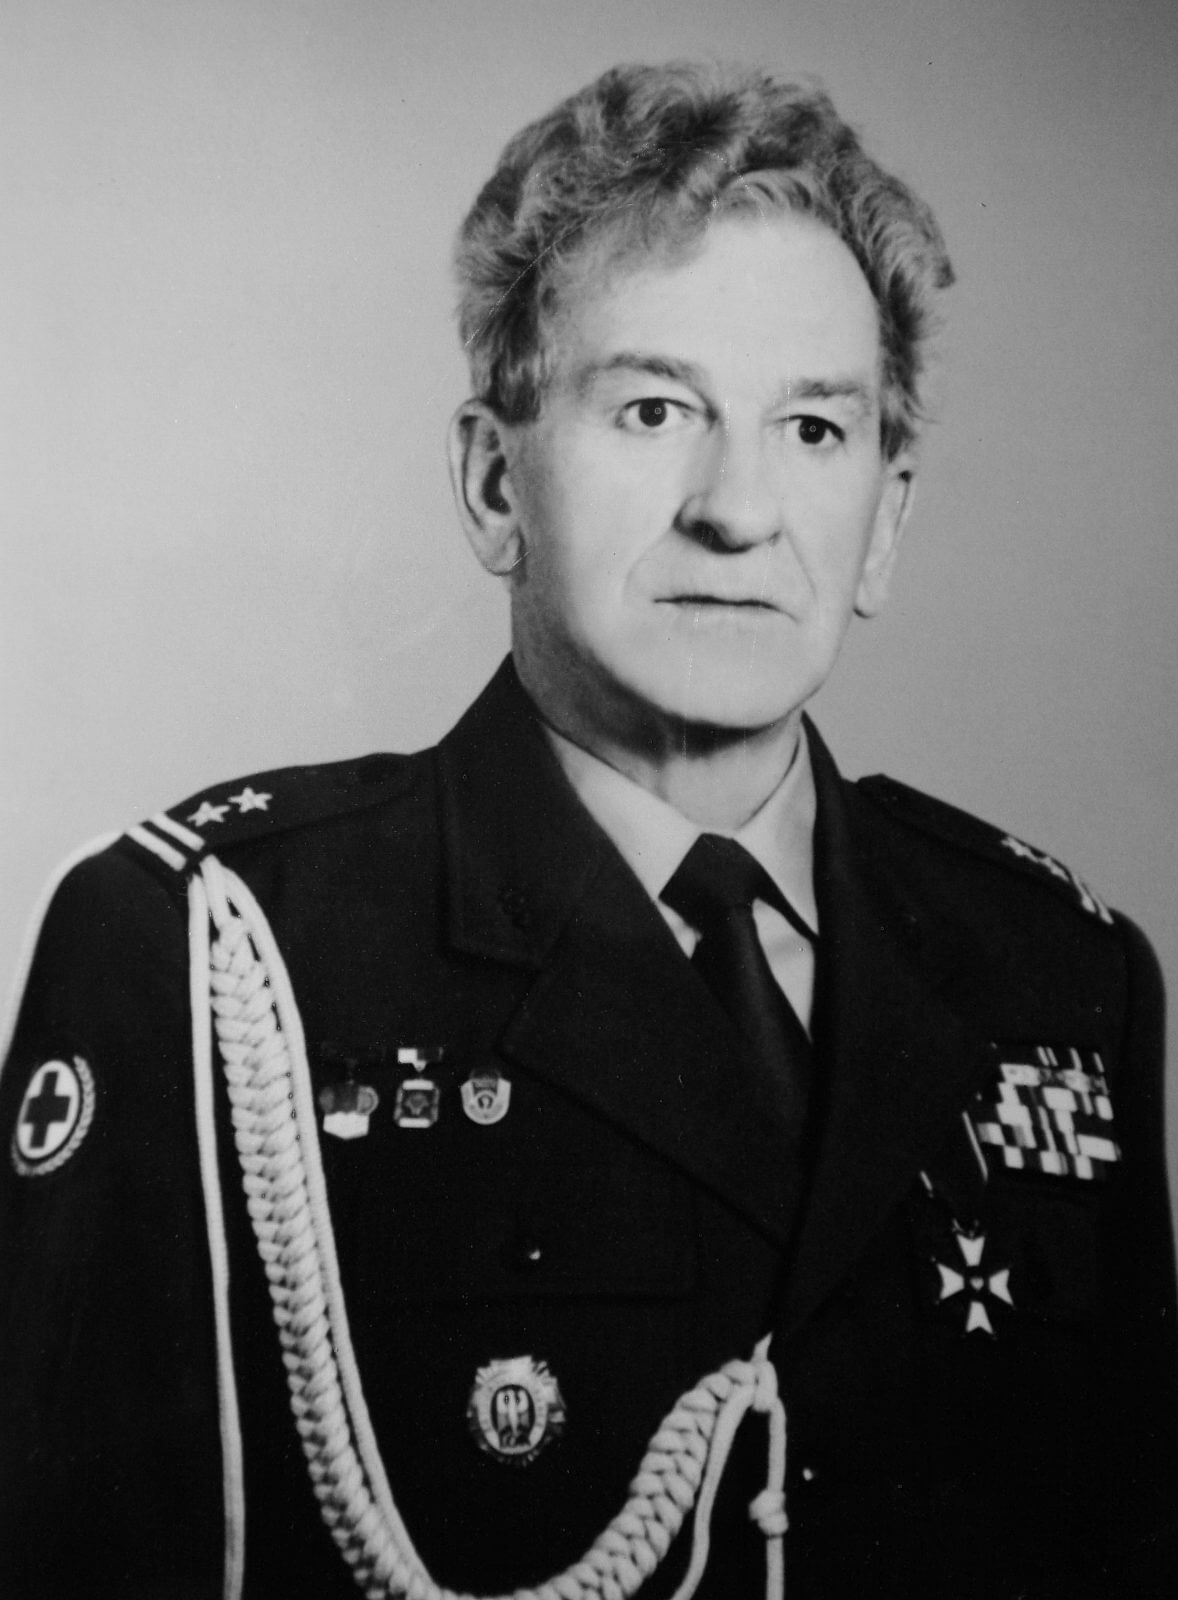 Dr płk Dariusz Kossakowski